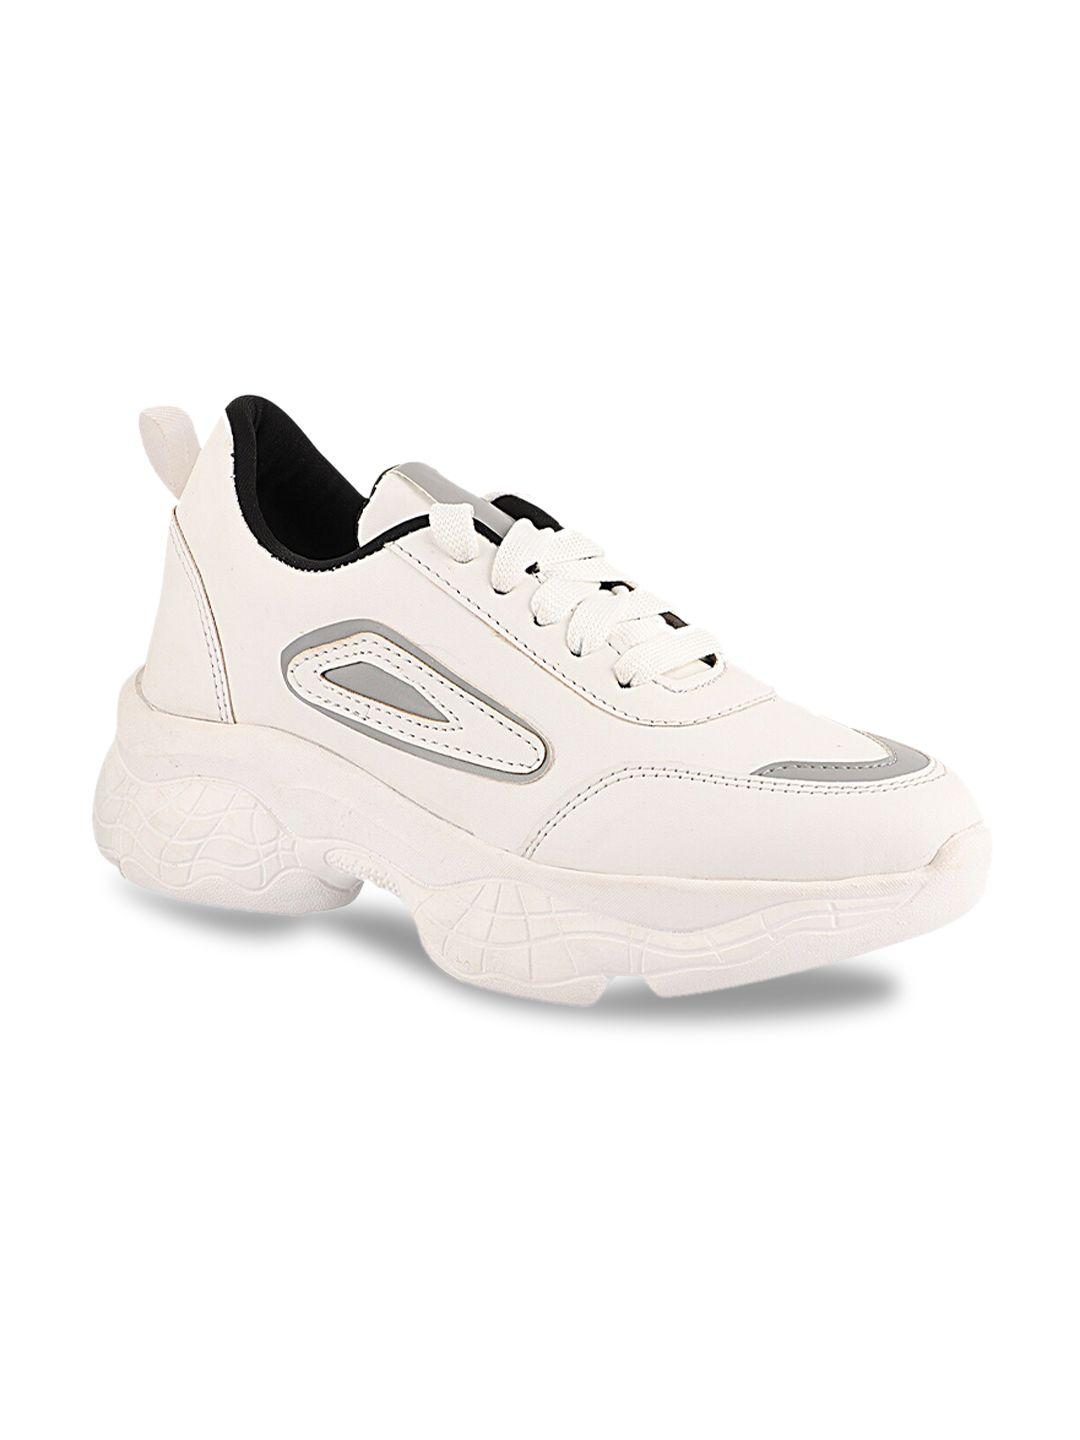 shoetopia women white synthetic long distance walking shoes